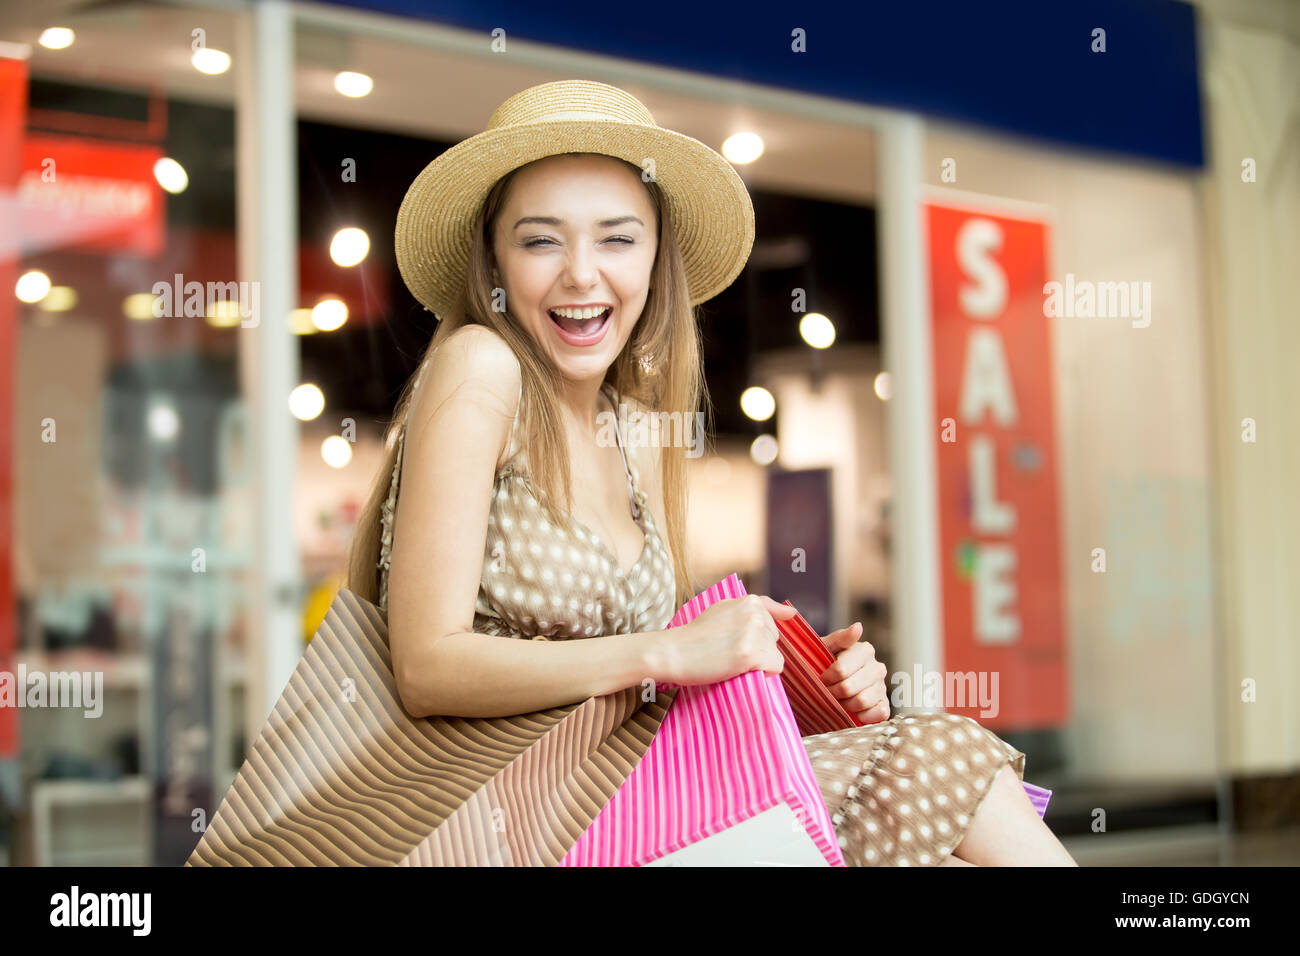 Porträt der fröhliche junge hübsche Frau mit Hut im Einkaufszentrum, umarmt fest Taschen mit Einkäufen, fröhlich lachend Stockfoto